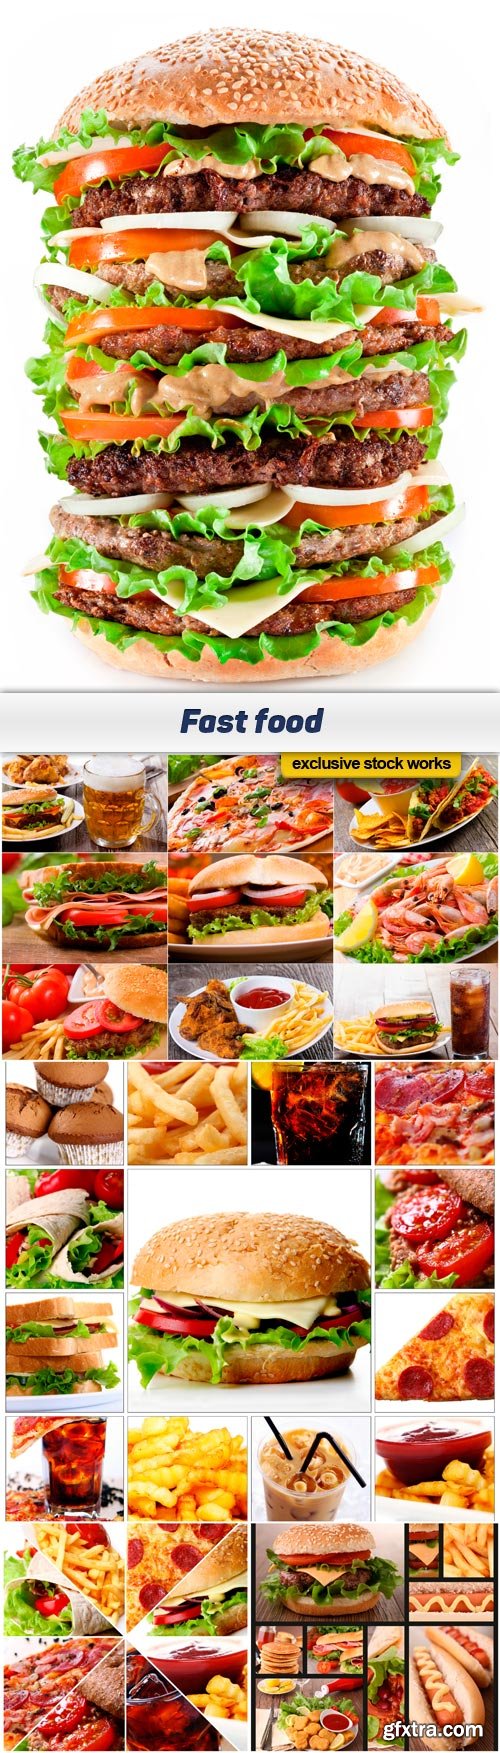 Fast food 5x JPEG